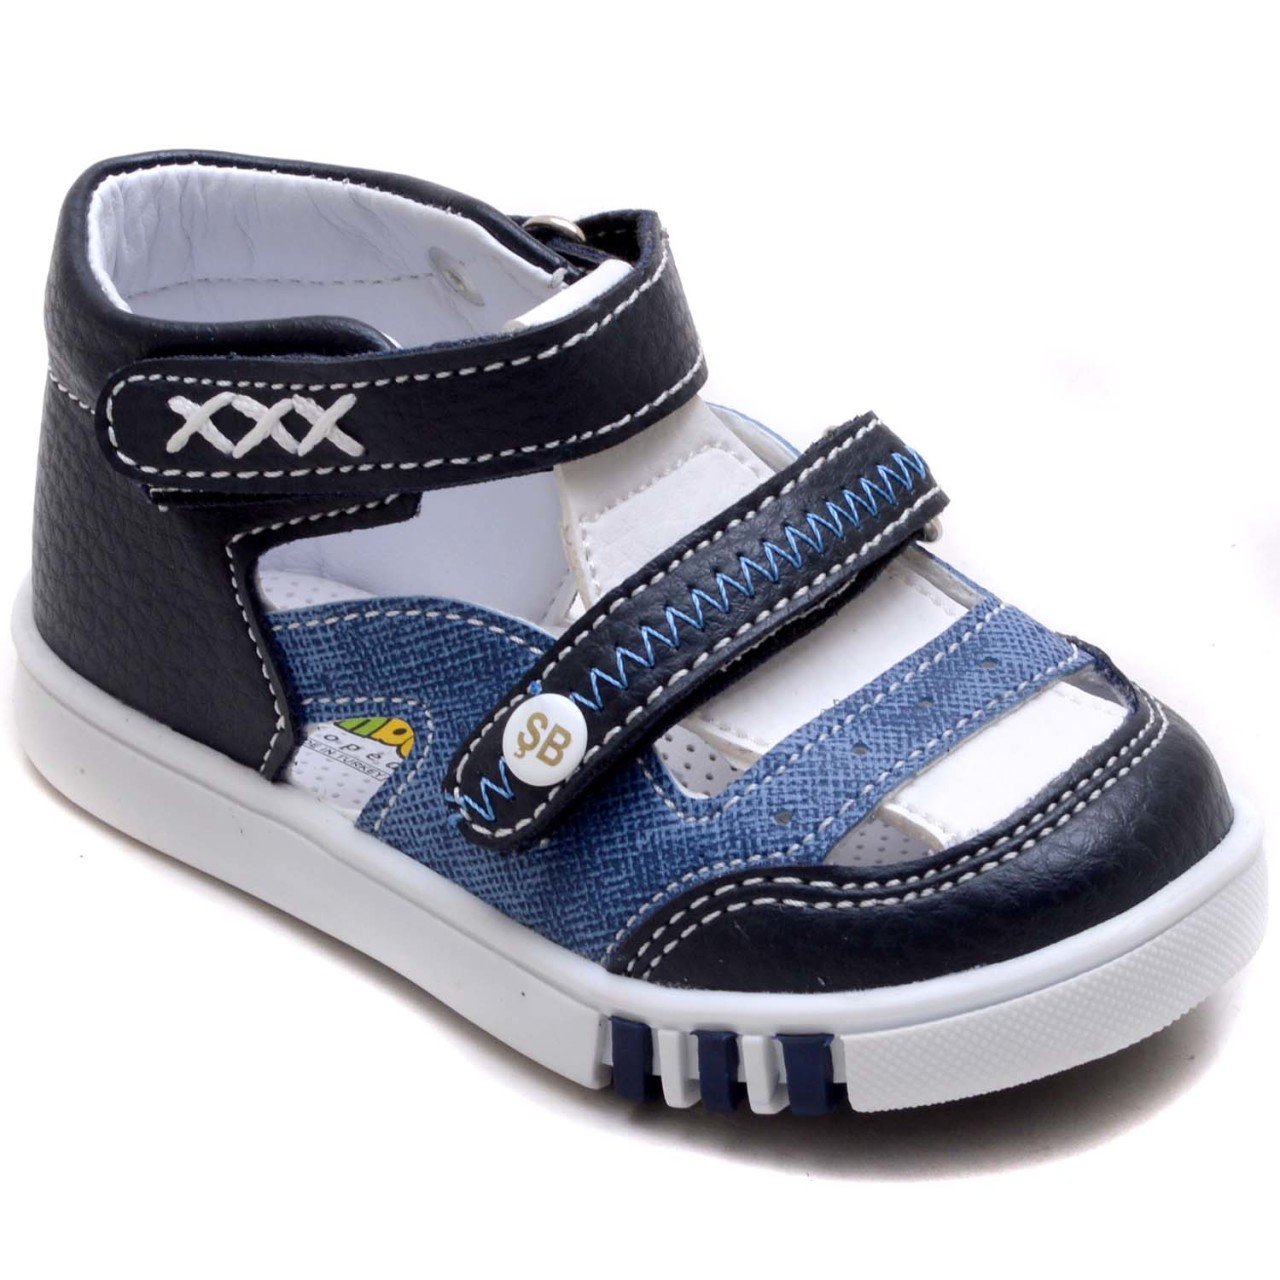 SB-128 Yeni Doğan Erkek Çocuk Sandalet - Lacivert/Mavi